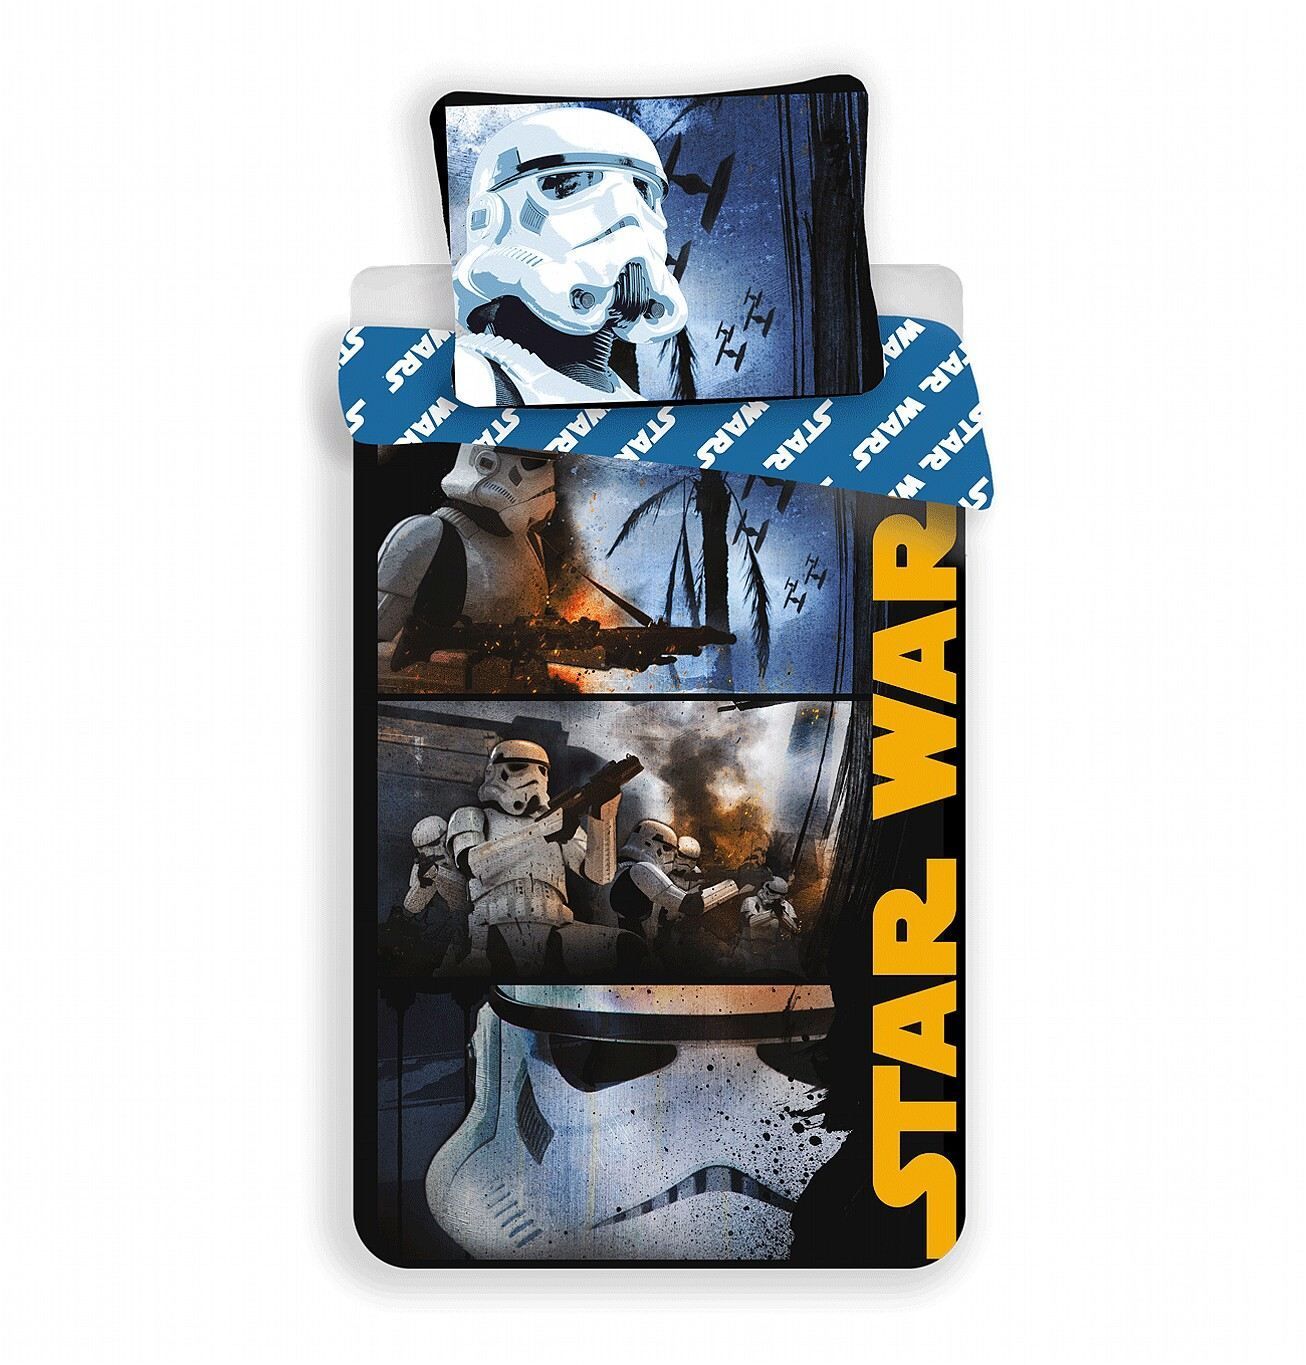 Hrdina z Hviezdnych vojen na detských bavlnených posteľných obliečkach Star Wars Stormtroopers, Jerry Fabrics